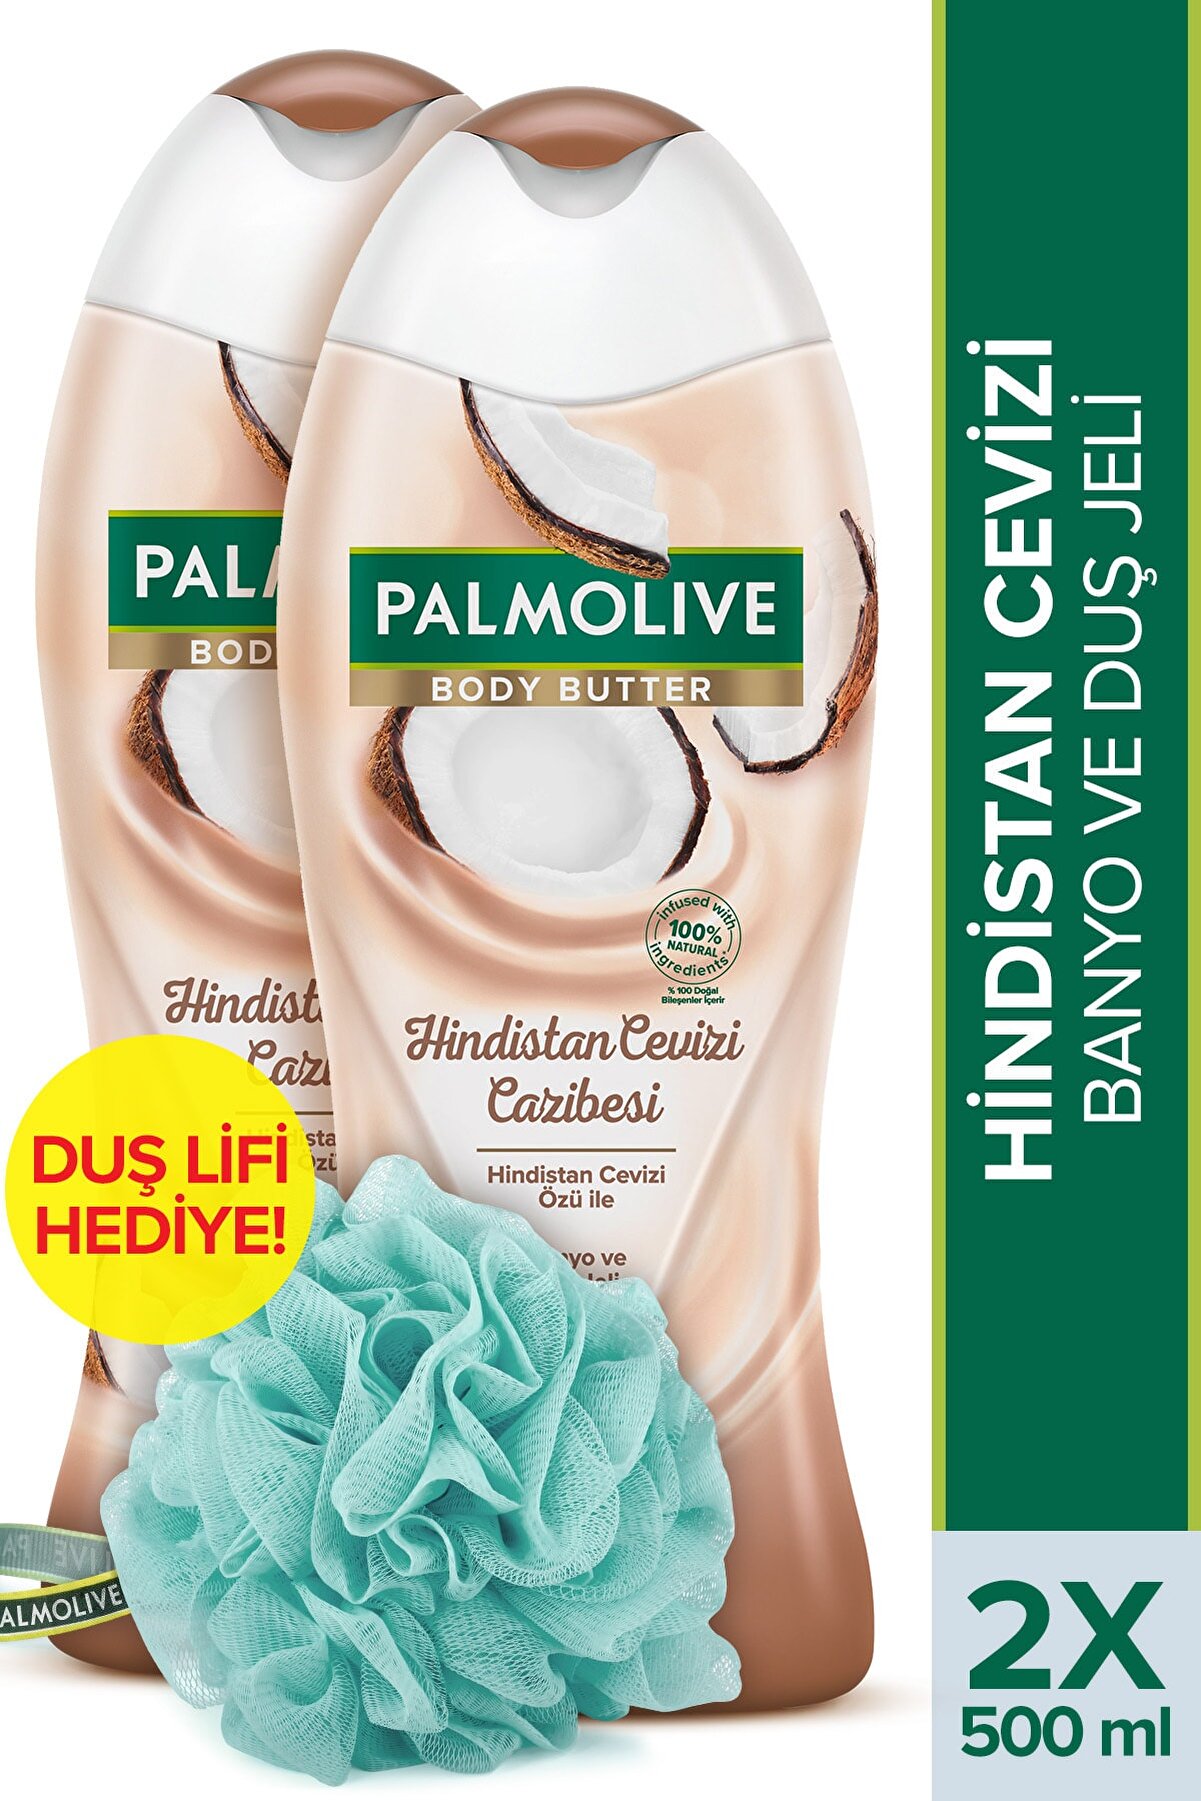 Palmolive Body Butter Hindistan Cevizi Cazibesi Banyo ve Duş Jeli 500 ml x 2 Adet + Duş Lifi Hediye